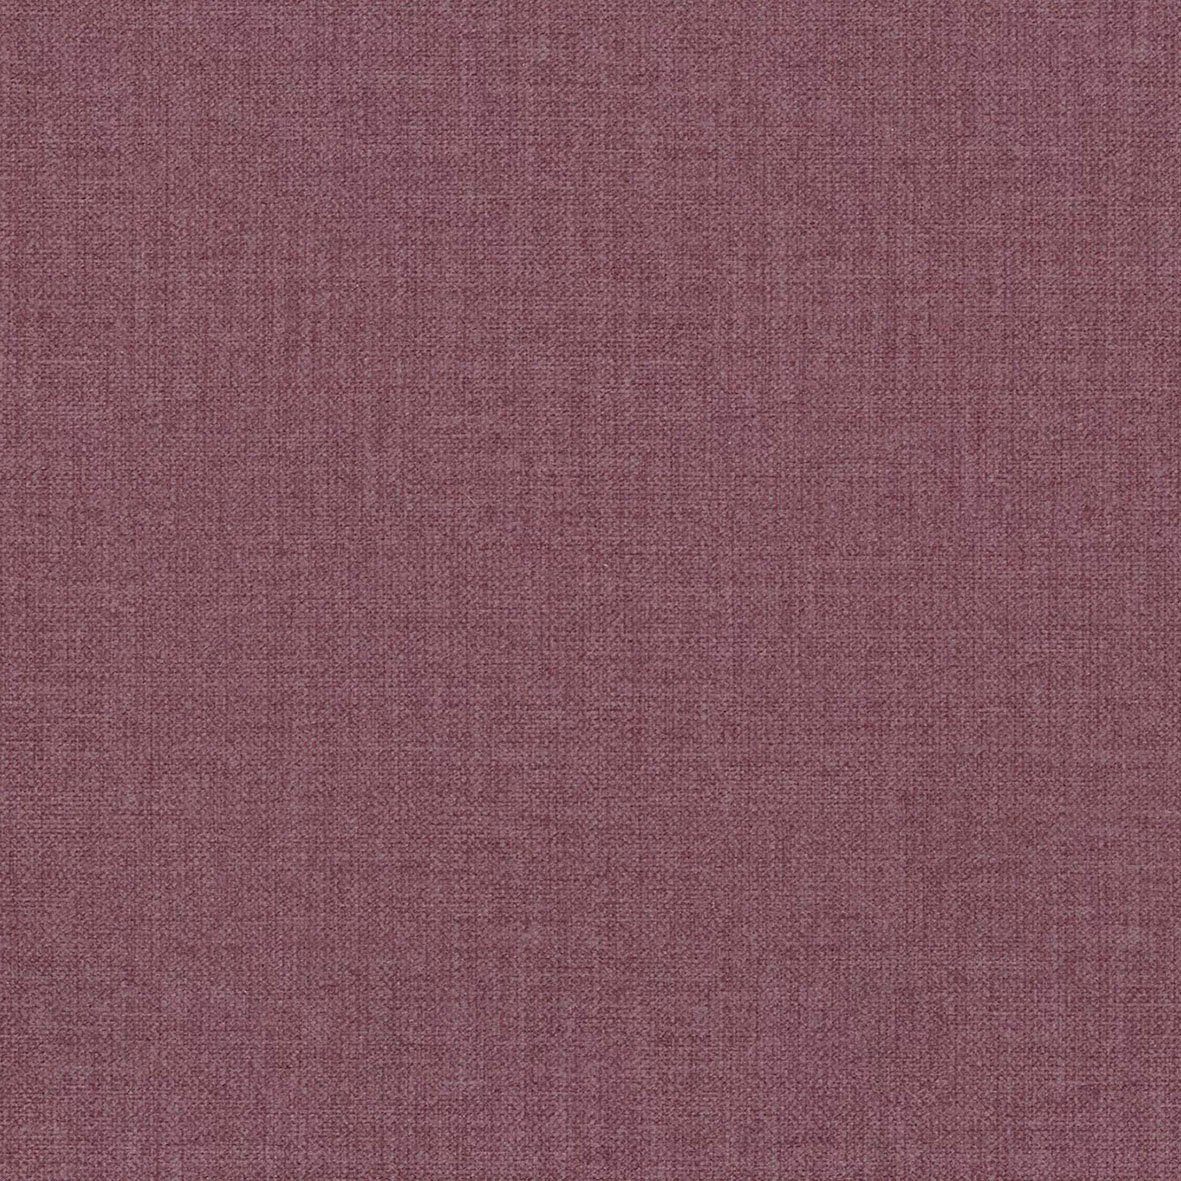 Tilques, pink viele bequeme verfügbar Home affaire Farben violet 3-Sitzer Sitzgelegenheiten,